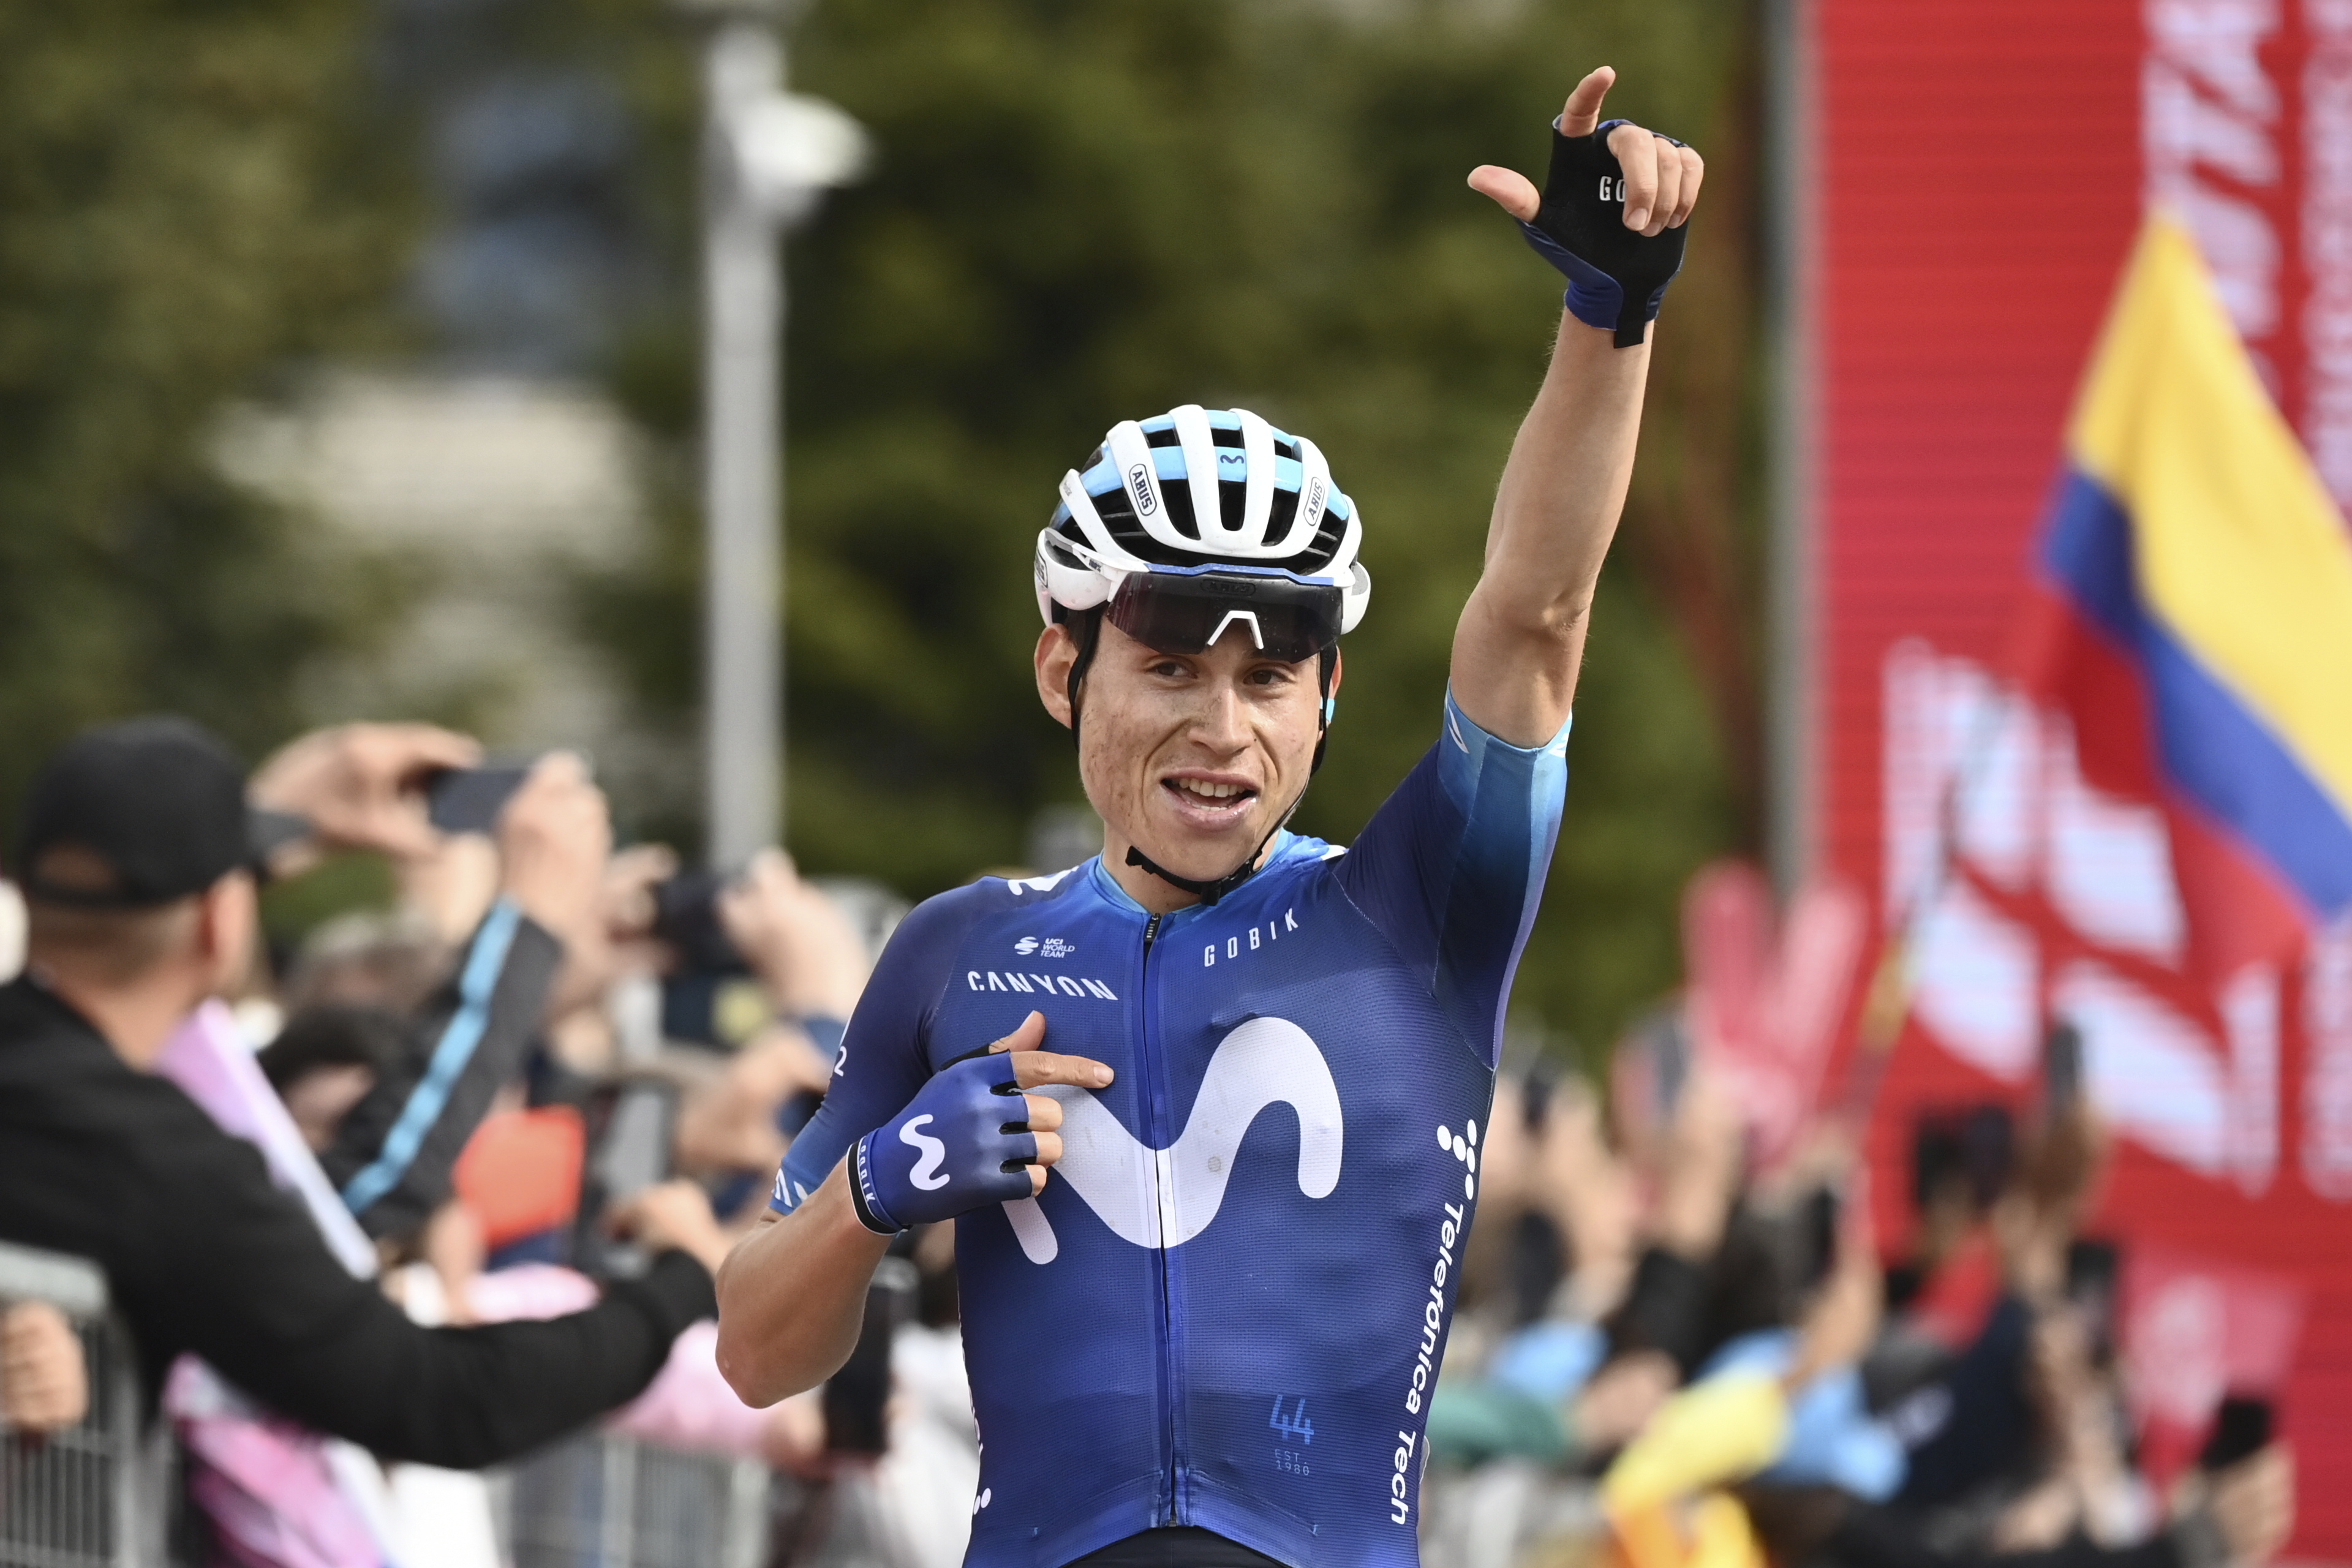 Einer Rubio escaló 90 casillas en el ranking de la UCI tras el Giro de Italia 2023: asi quedaron el resto de colombianos